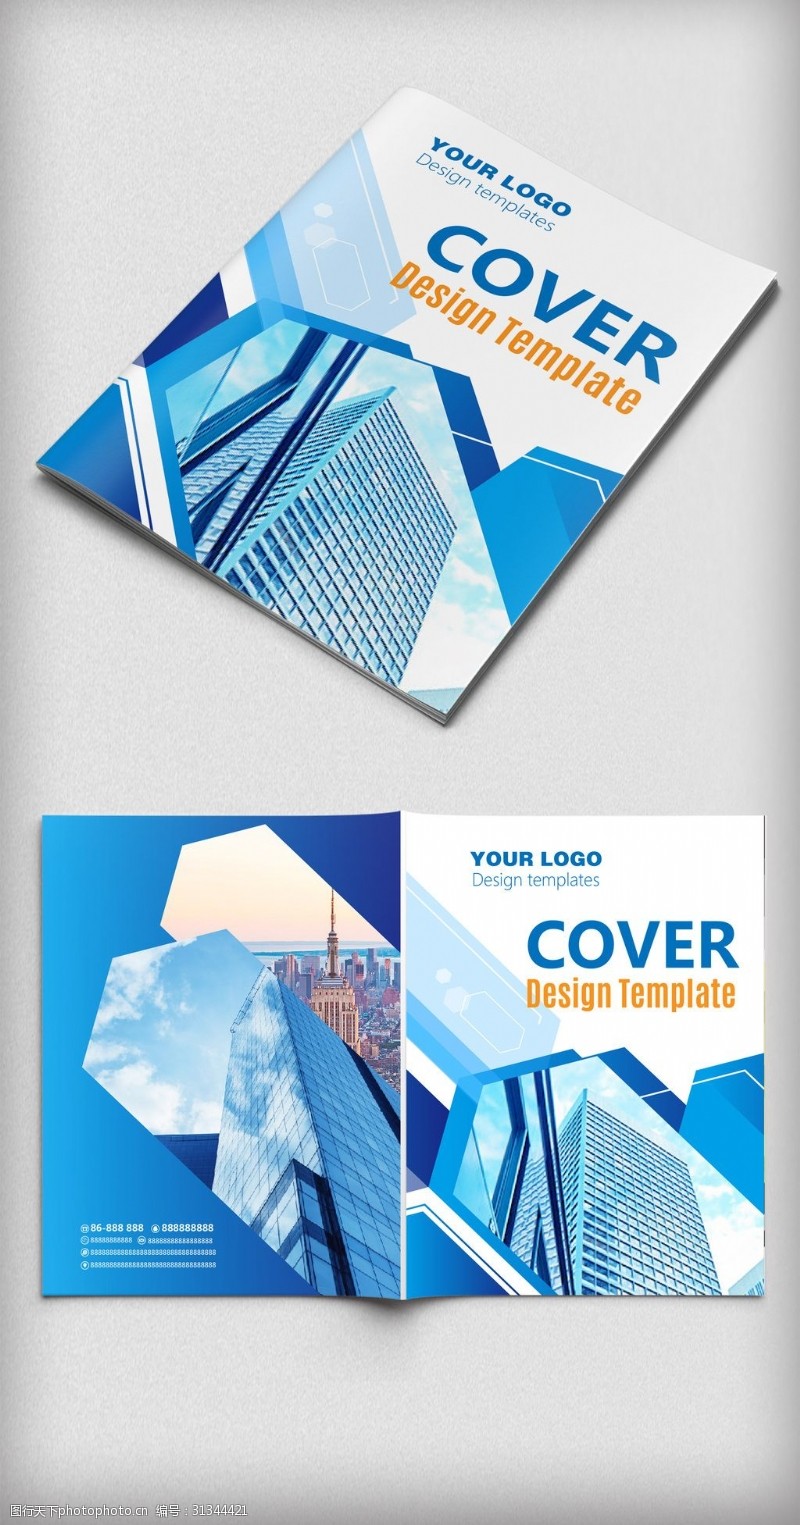 简约封面设计大气蓝色时尚杂志广告宣传封面设计